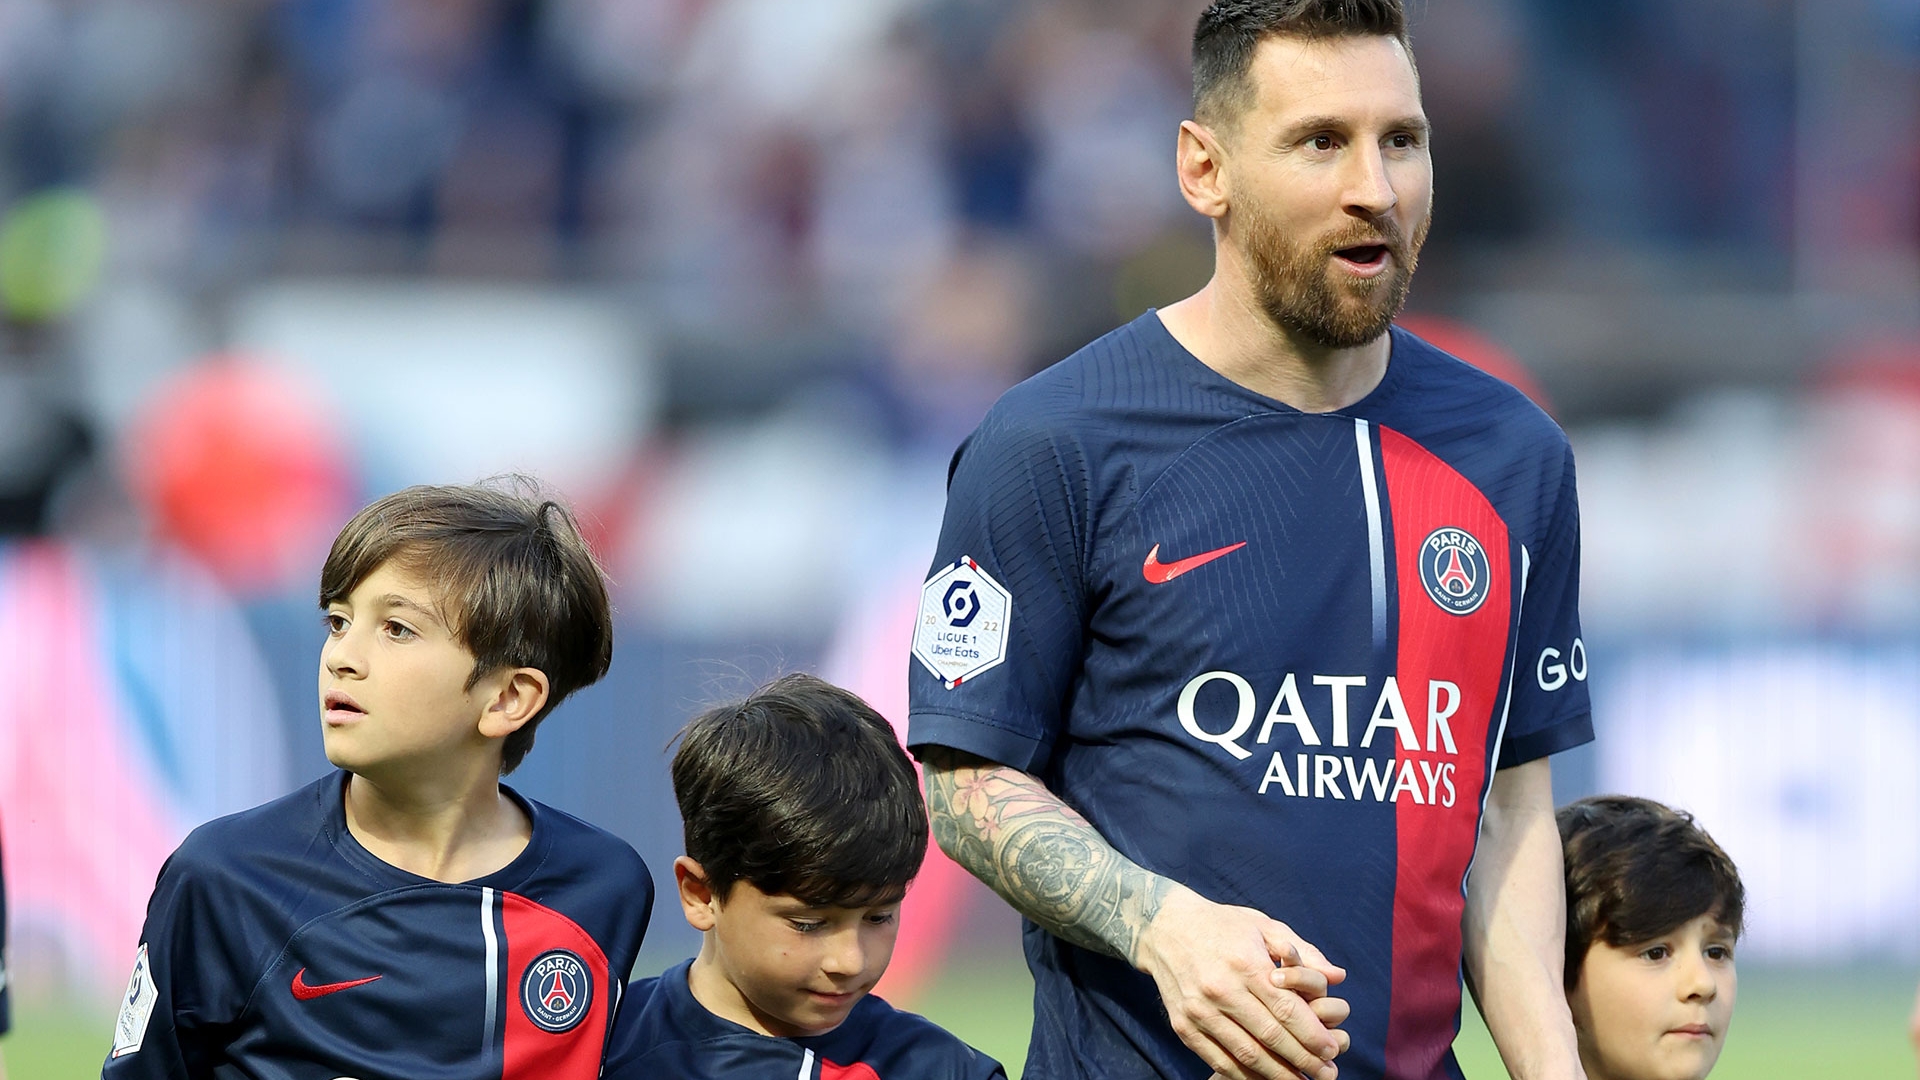 El último partido de Messi en PSG: salida al campo de juego con sus tres hijos y otro injusto abucheo tras fallar un gol